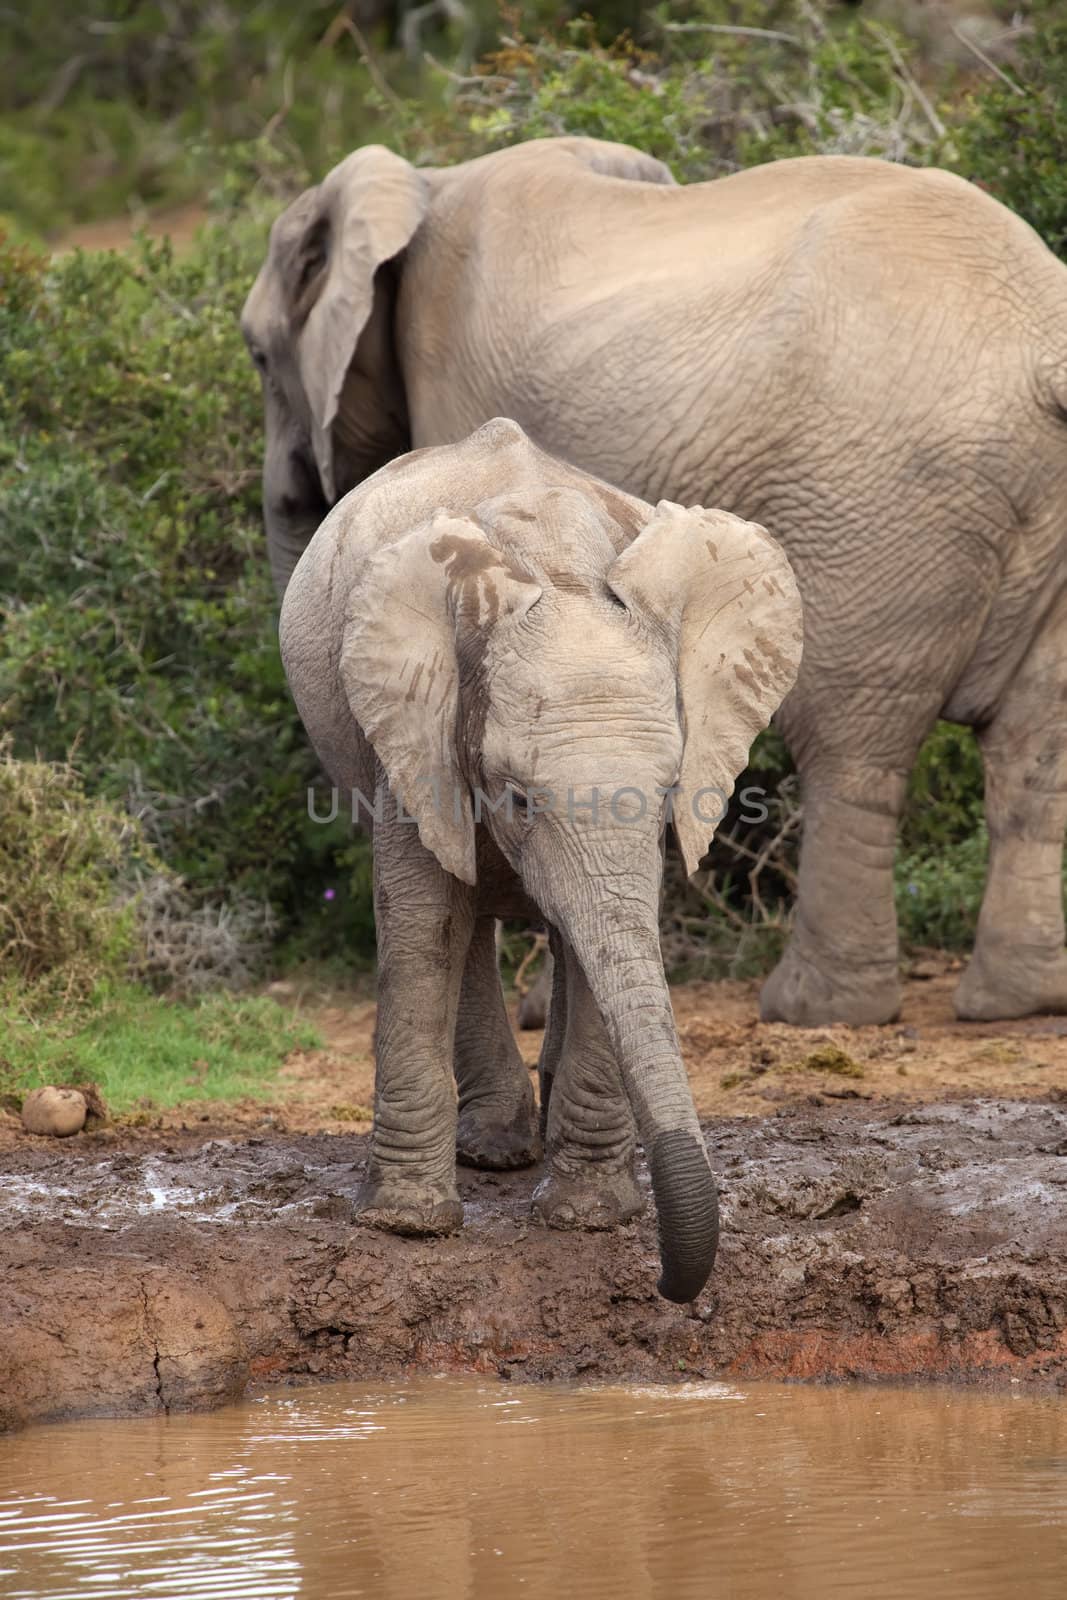 Thirsty Baby Elephant by nightowlza